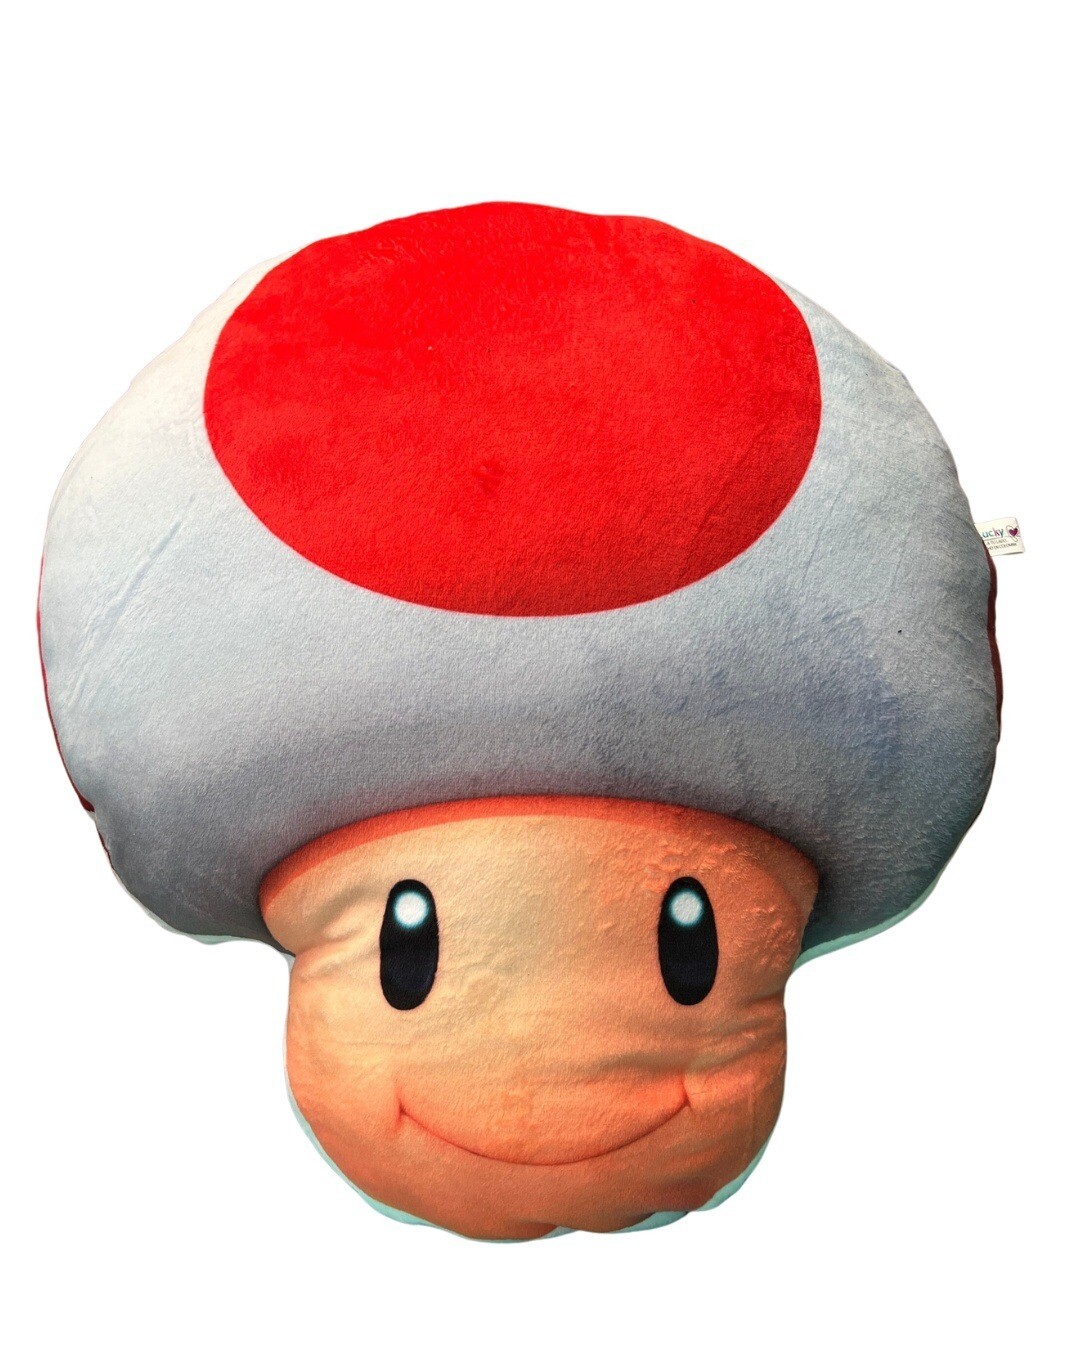 Cojin de Toad Honguito - Colección Super Mario Bros